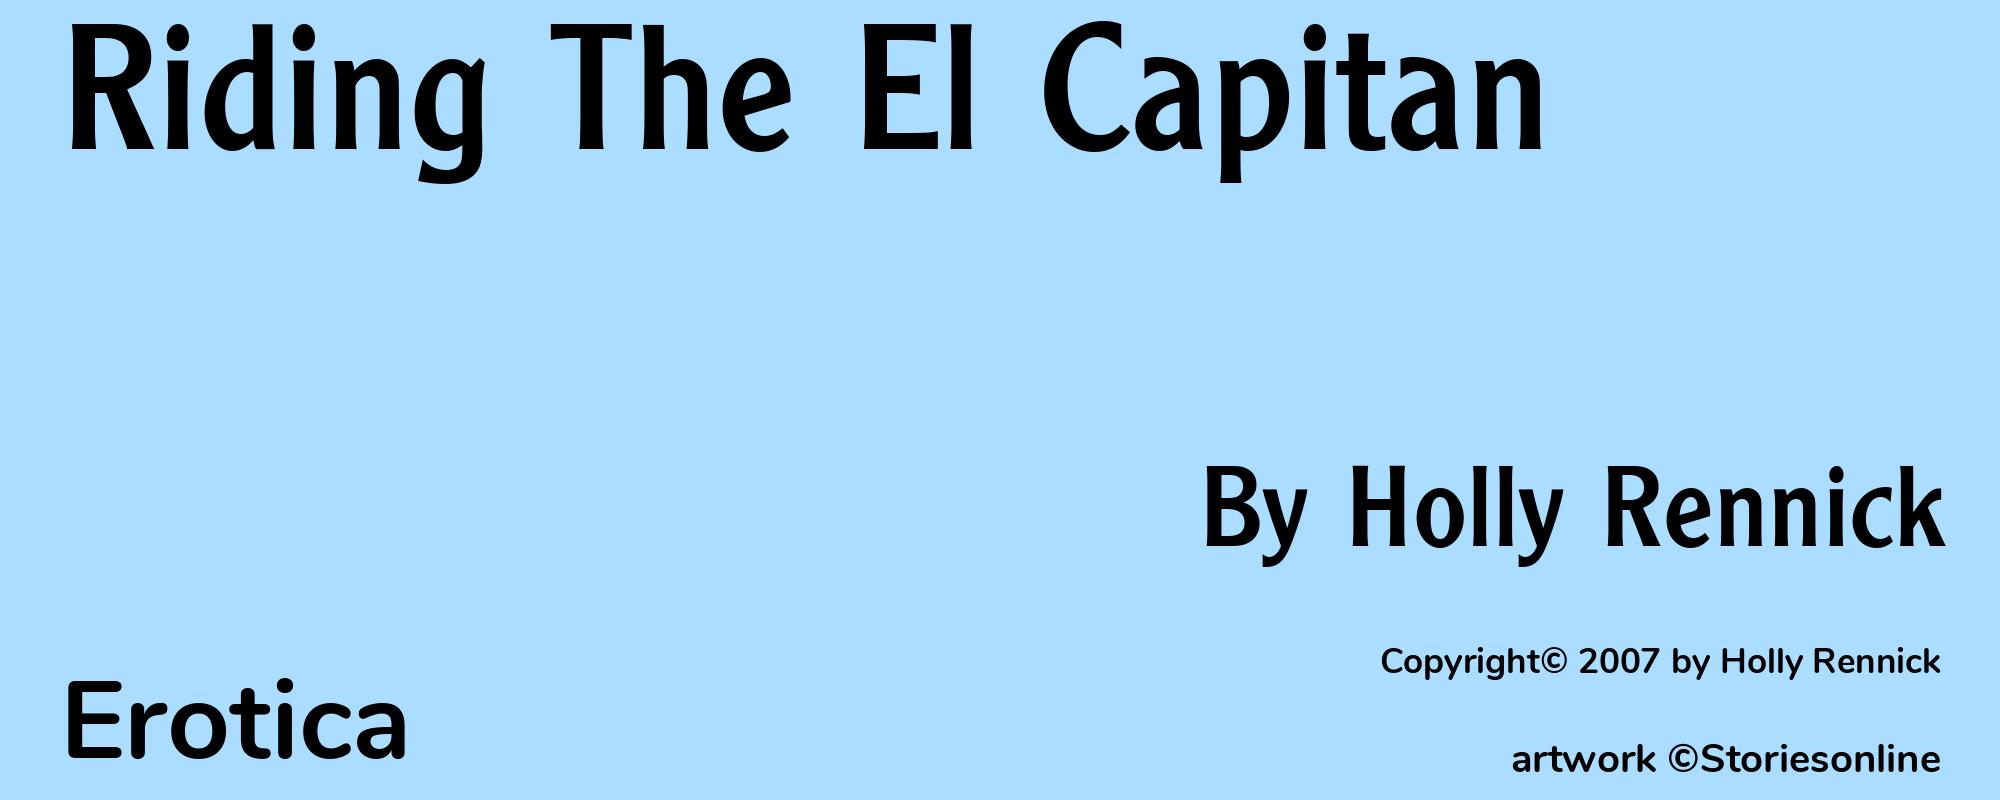 Riding The El Capitan - Cover